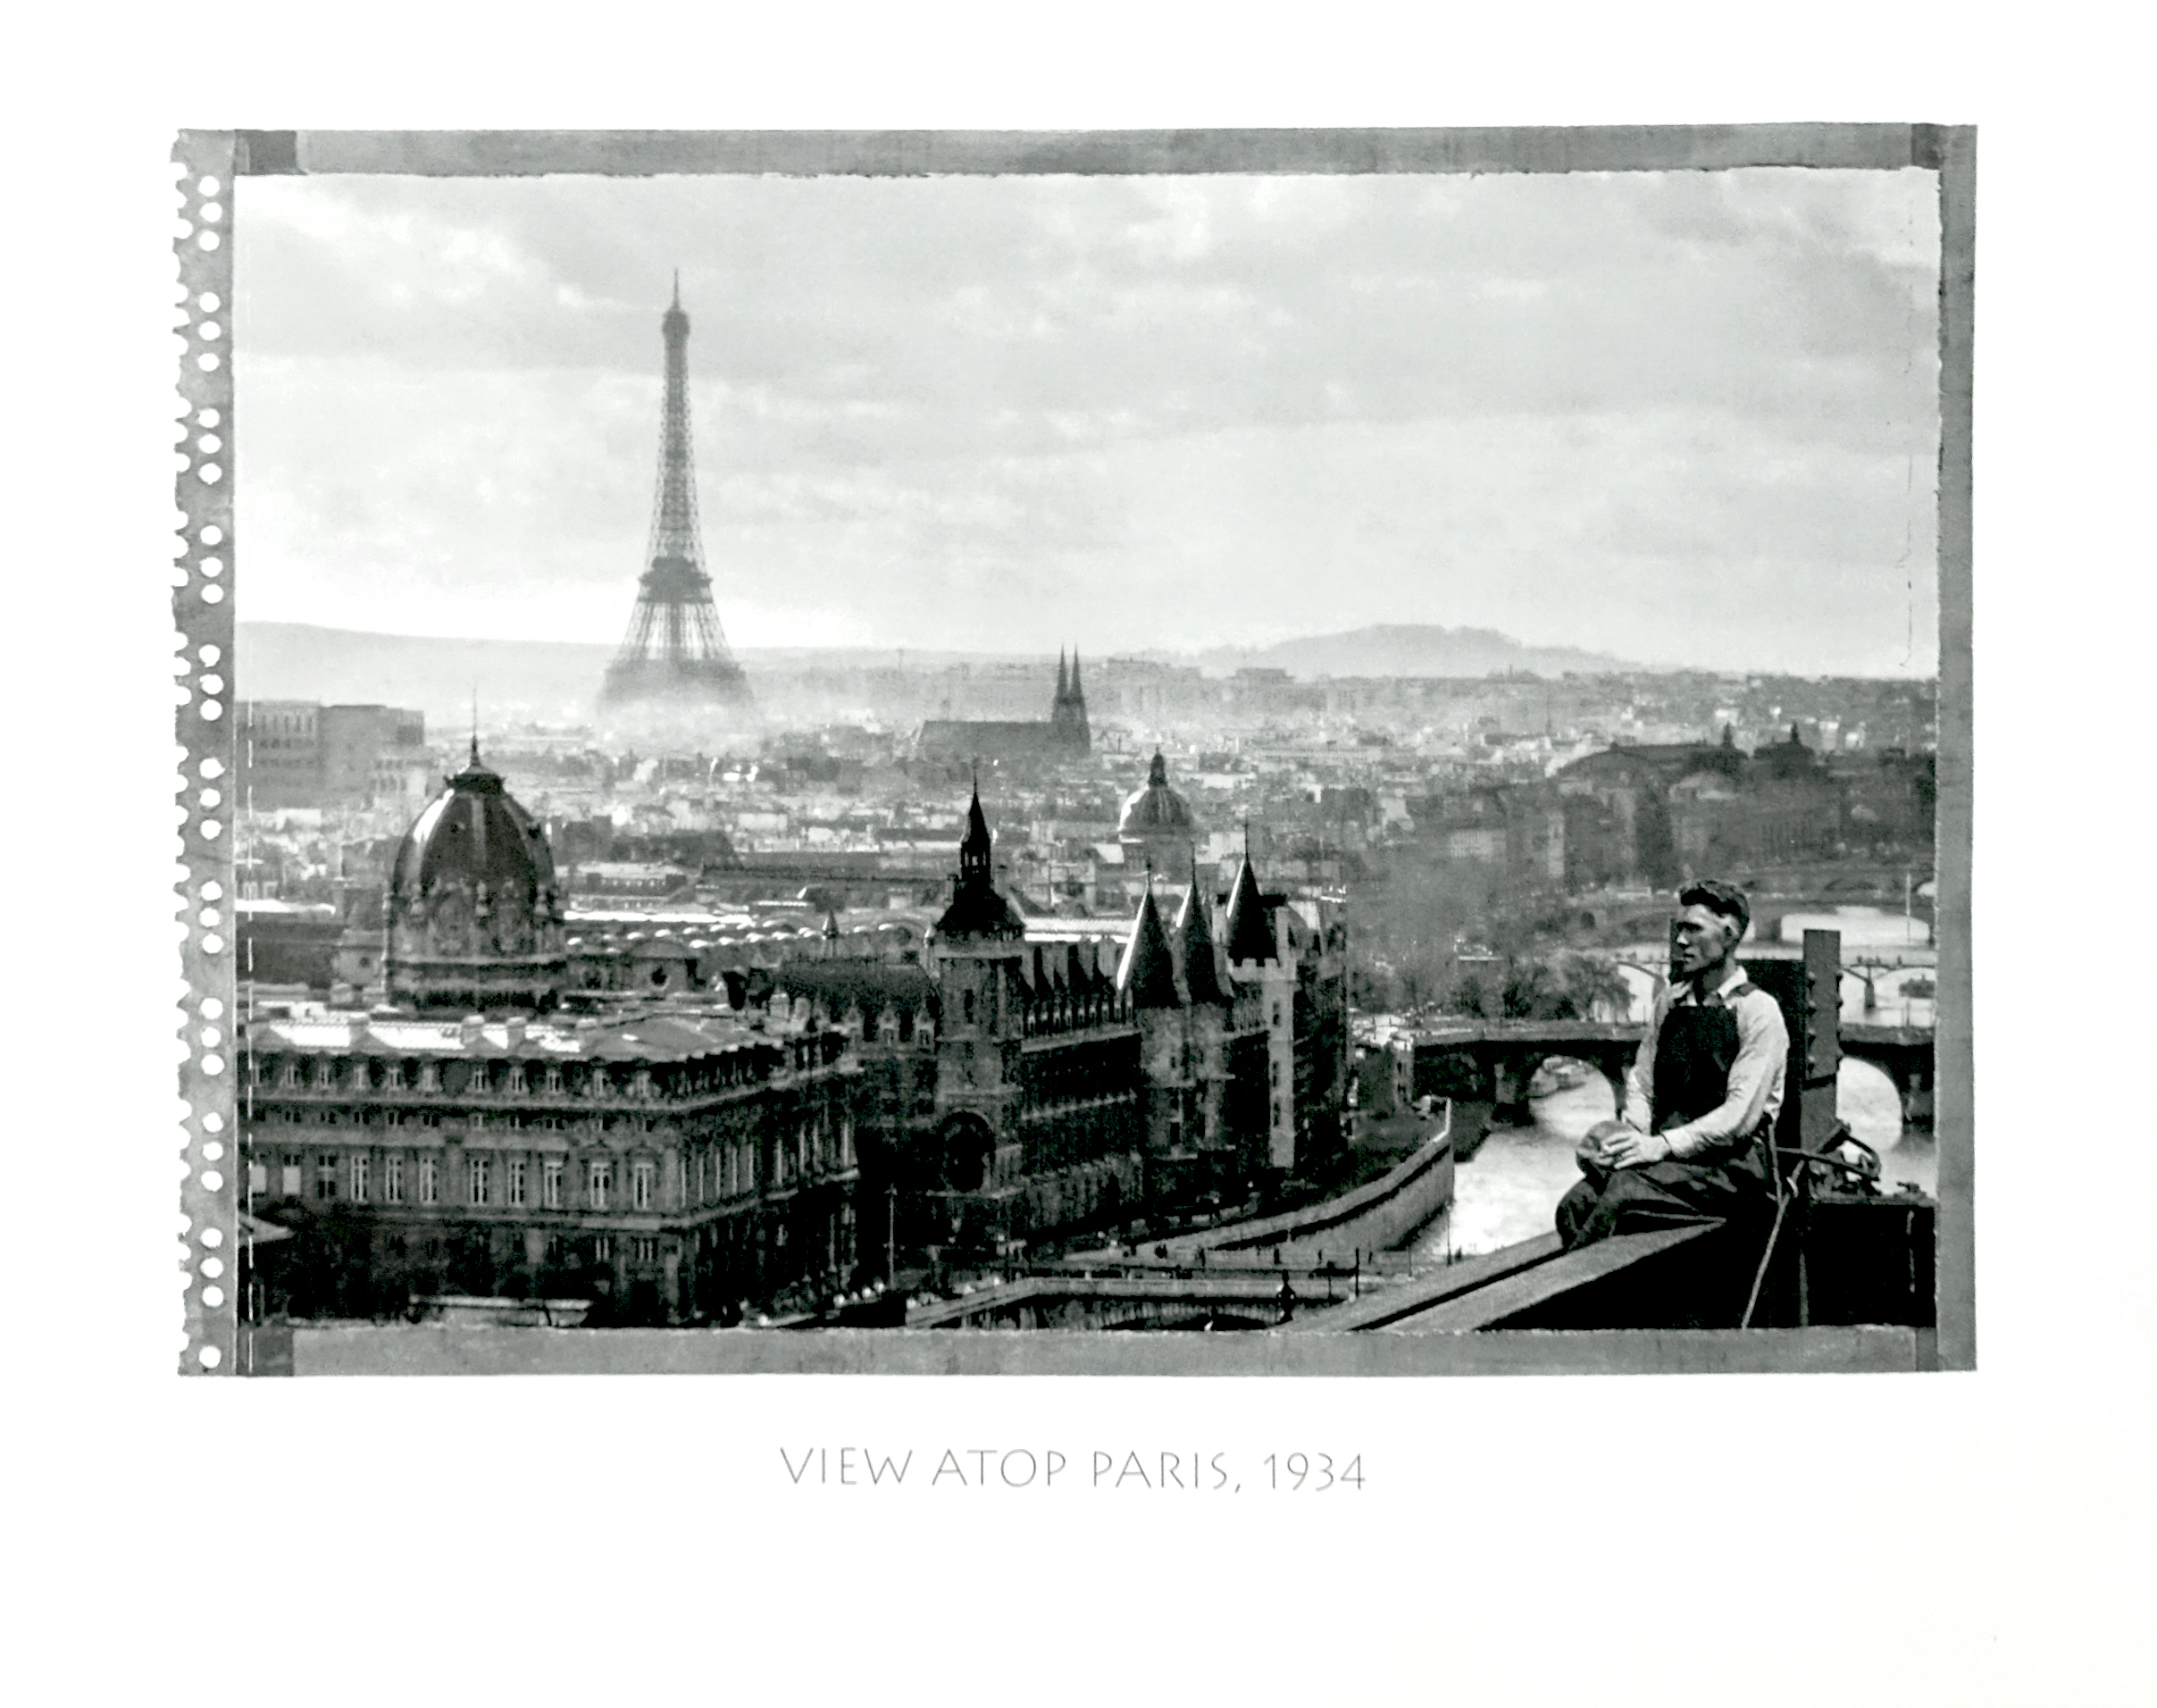 View Atop Paris, 1934